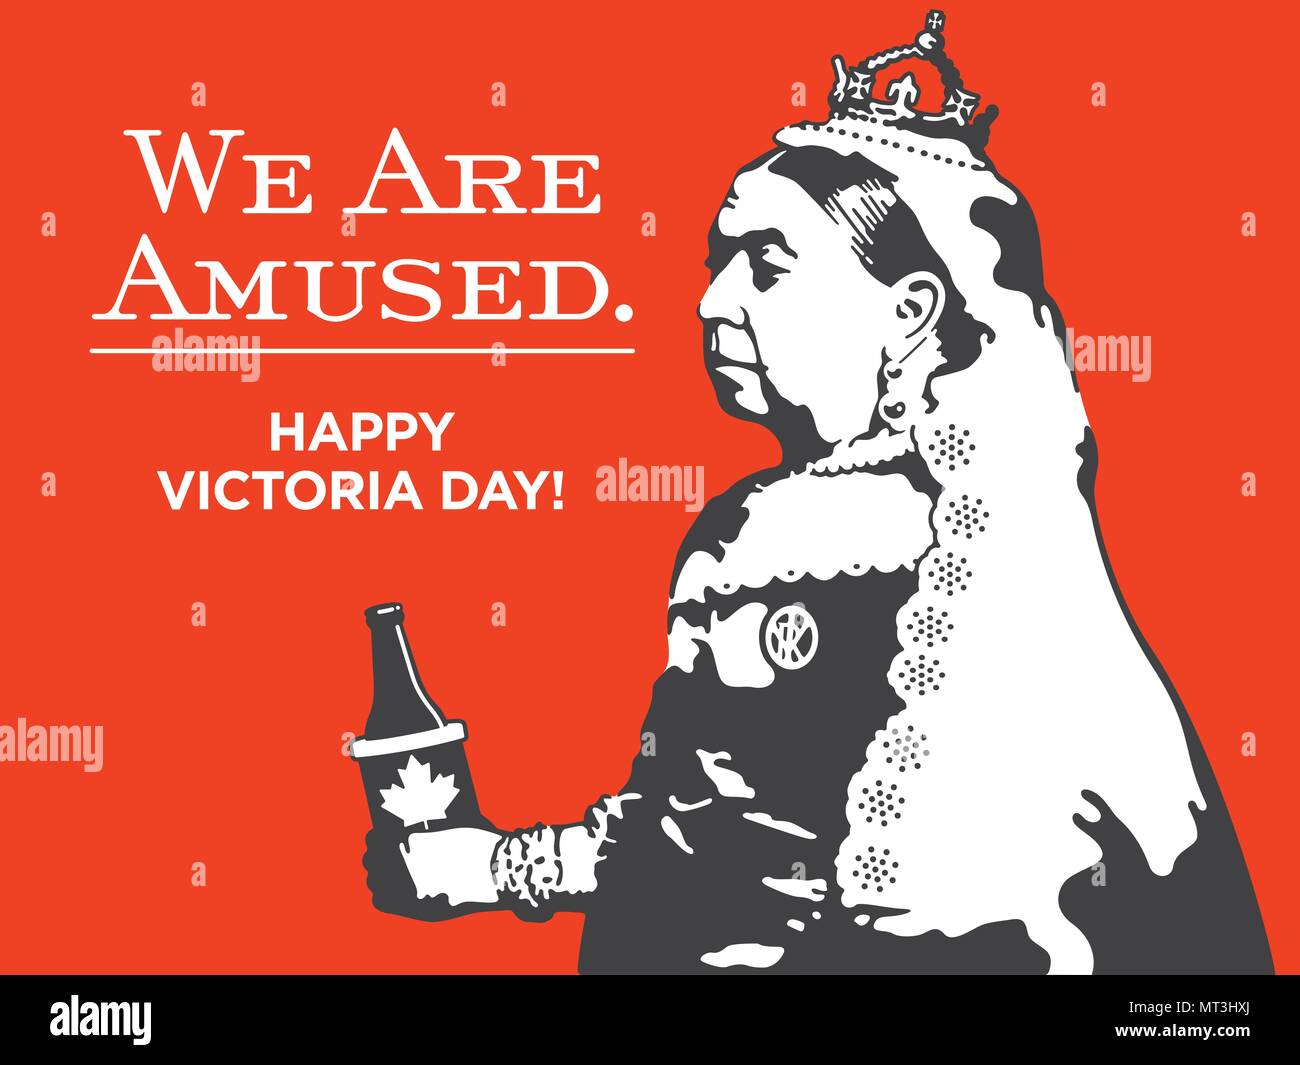 La reine Victoria nous s'amusent le Jour de Victoria l'illustration. Fête de la conception de scénario de la reine Victoria tenant une bouteille de bière dans une feuille d'érable canadienne Illustration de Vecteur